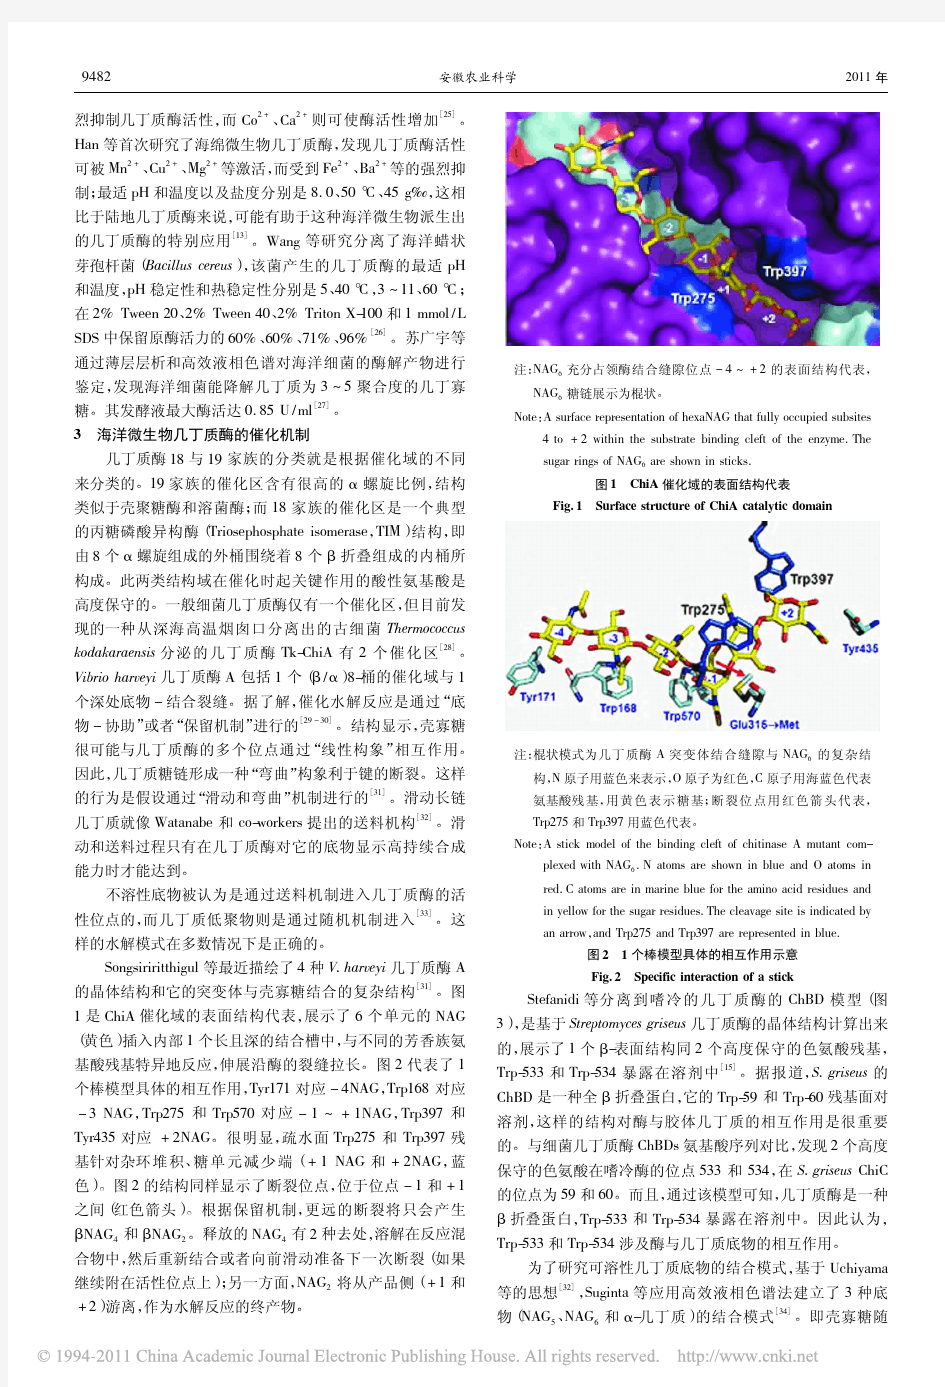 海洋微生物几丁质酶的研究进展